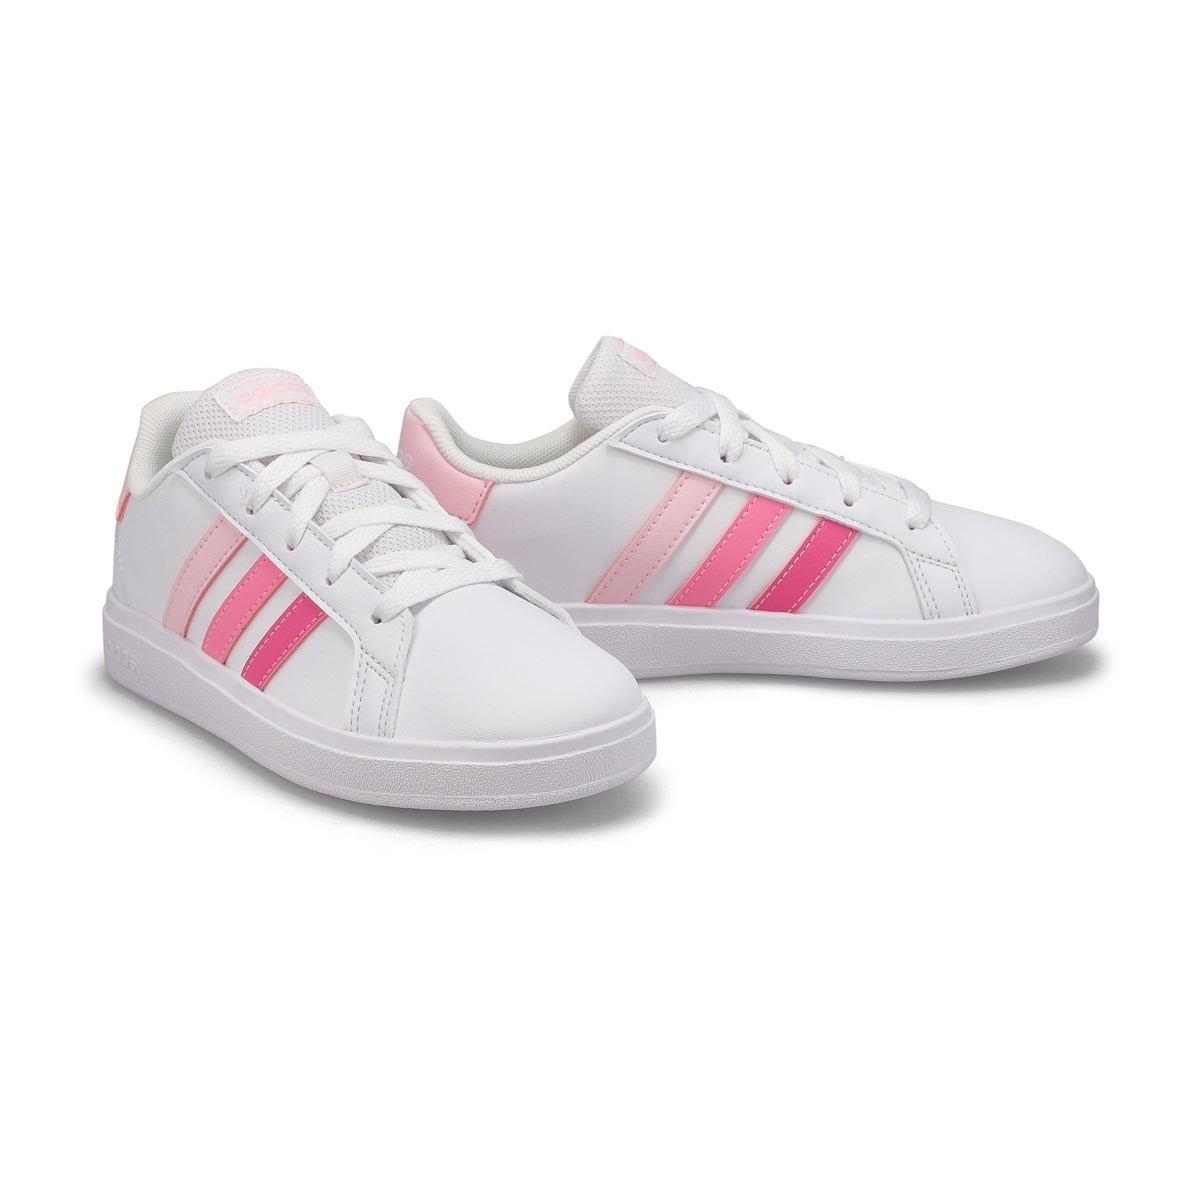 Girls' Grand Court 2.0 K Sneaker - Pink/White